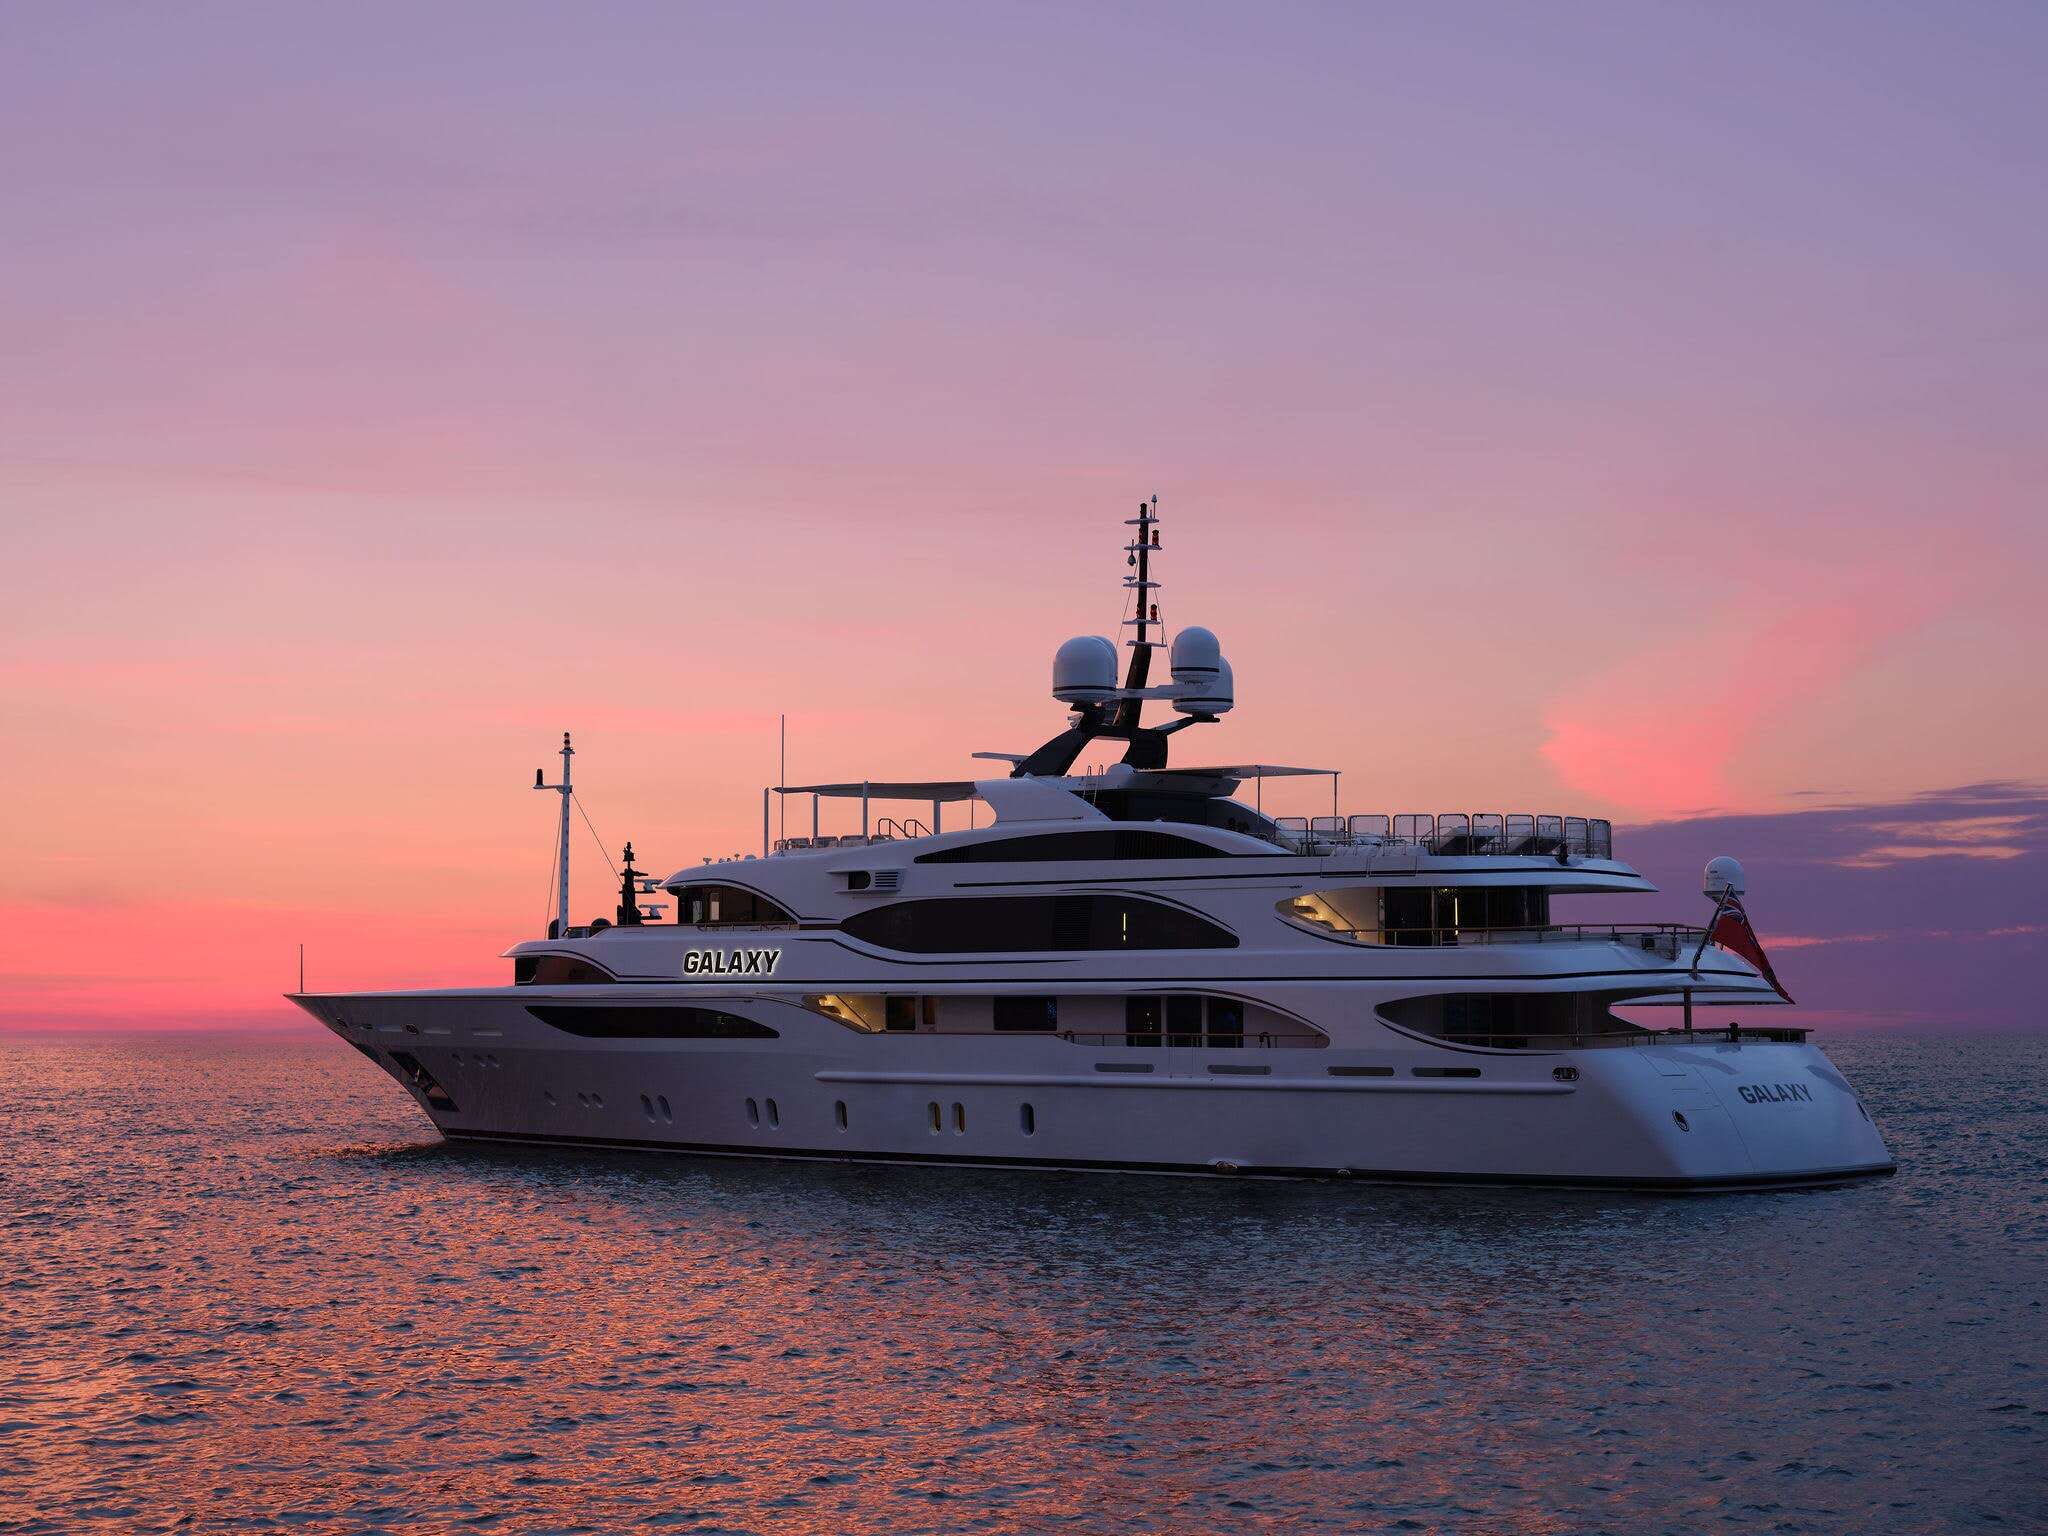 260 foot luxury yacht